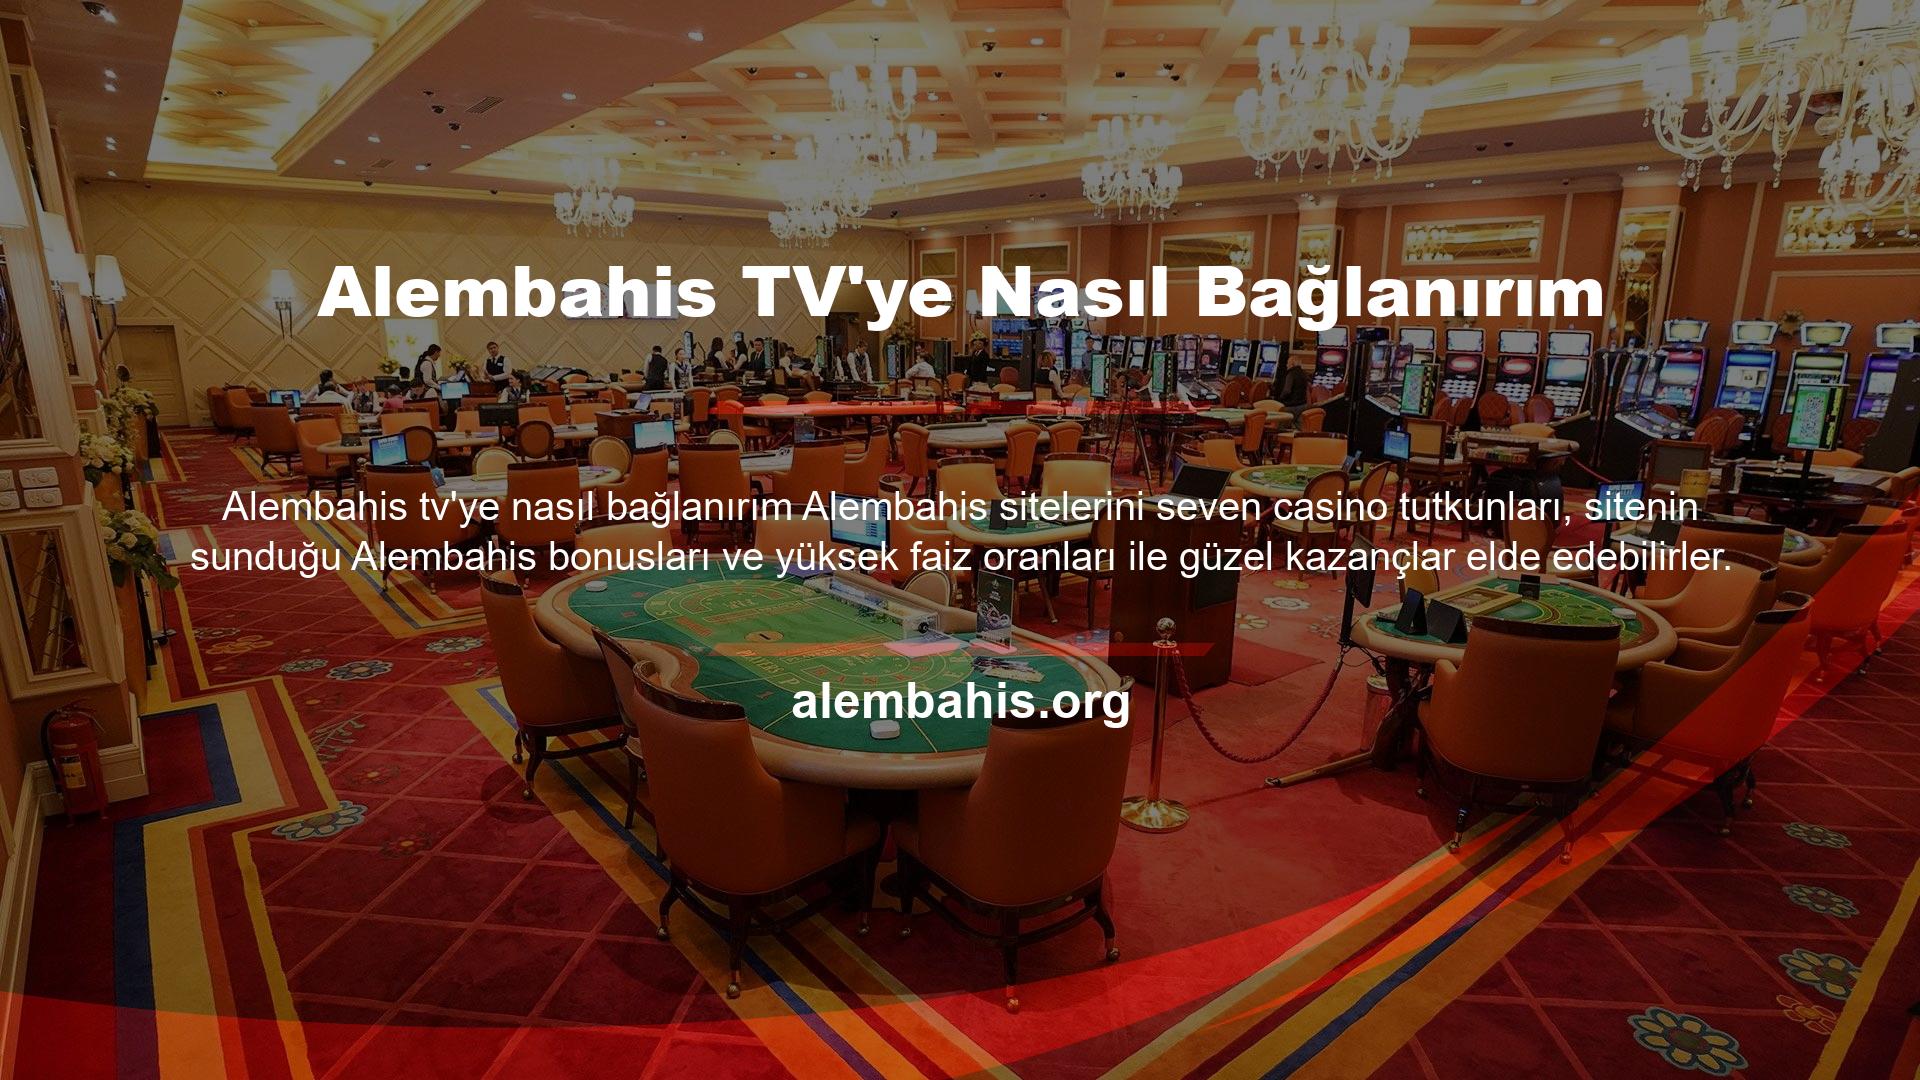 Alembahis web sitesi, casino tutkunlarının bahislerini takip edebilmeleri için Alembahis TV platformunu da oluşturmuştur